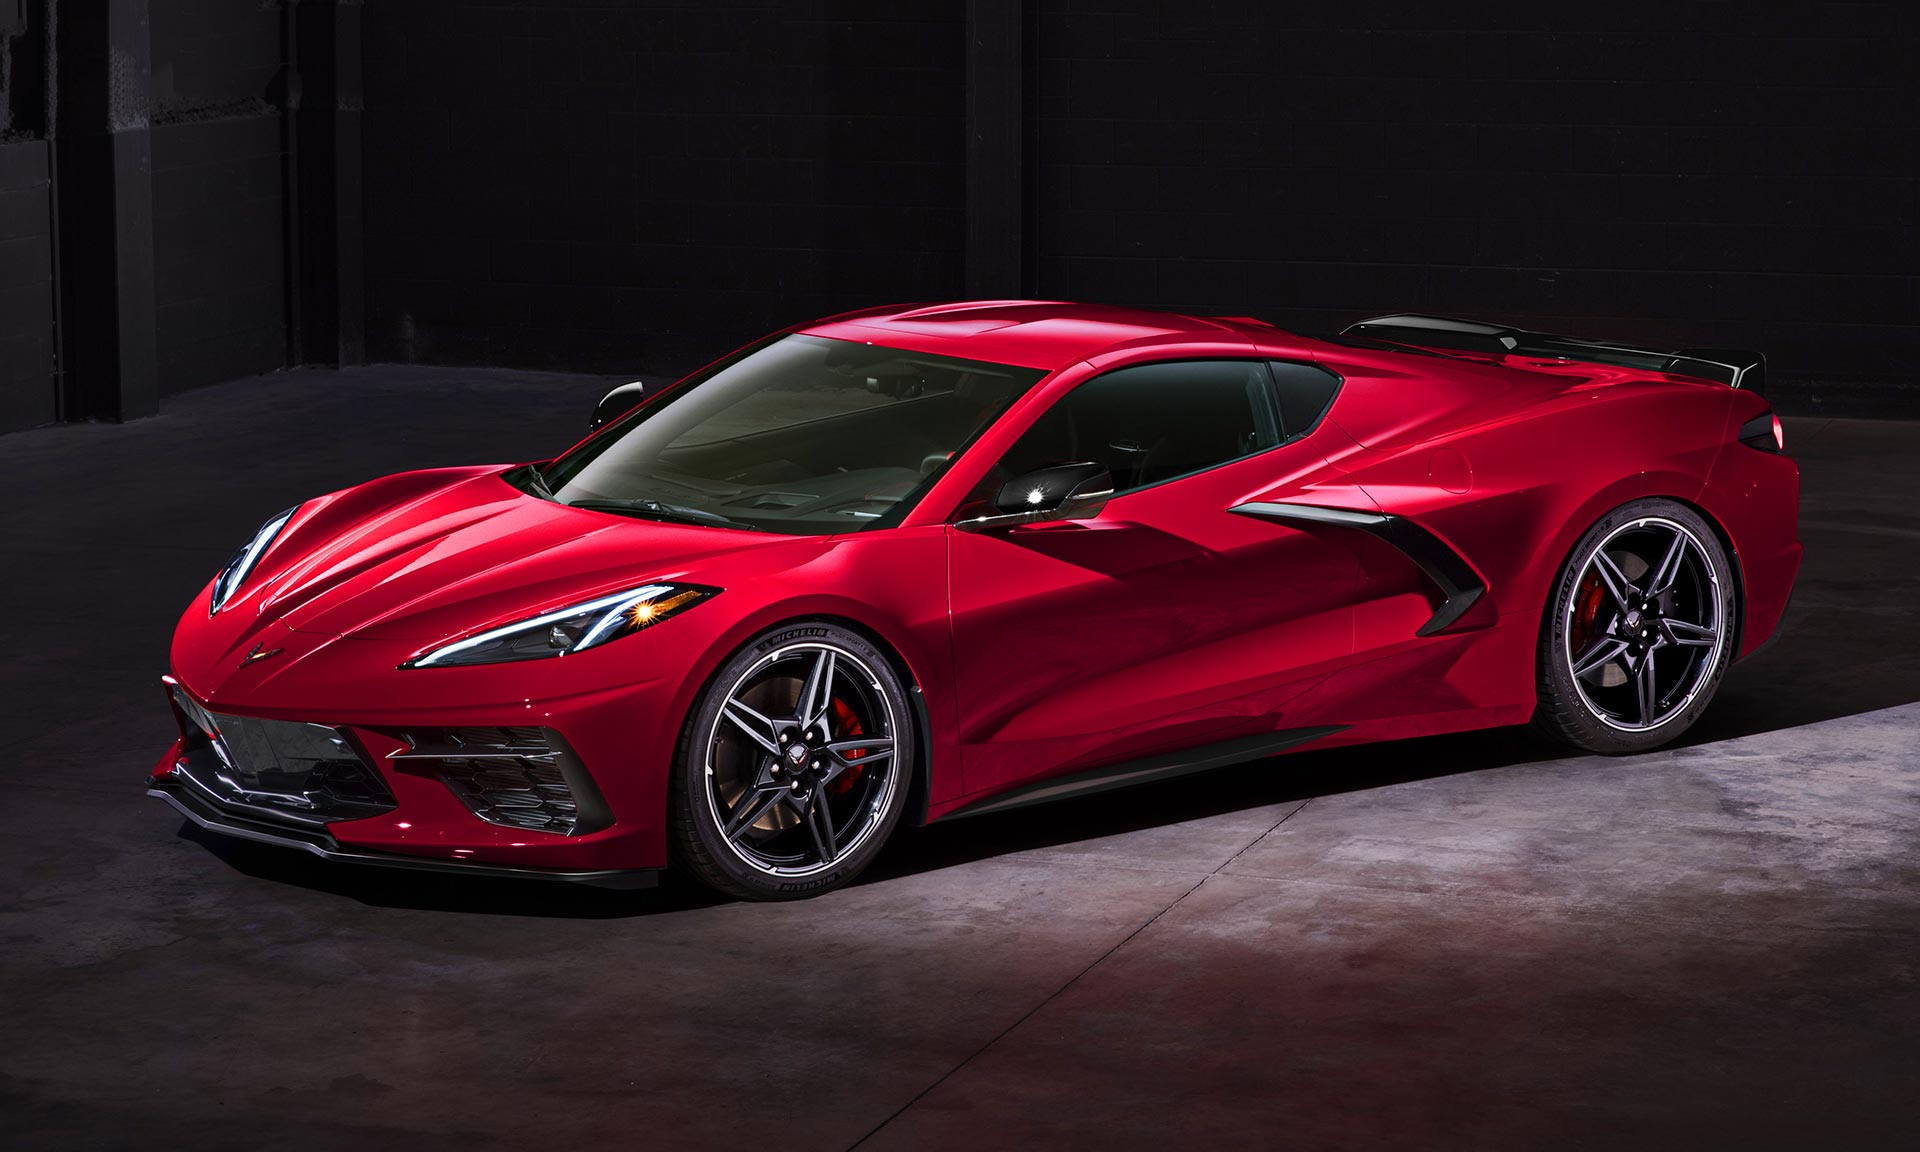 Chevrolet ukázal novou generaci svého ikonického sporťáku Corvette